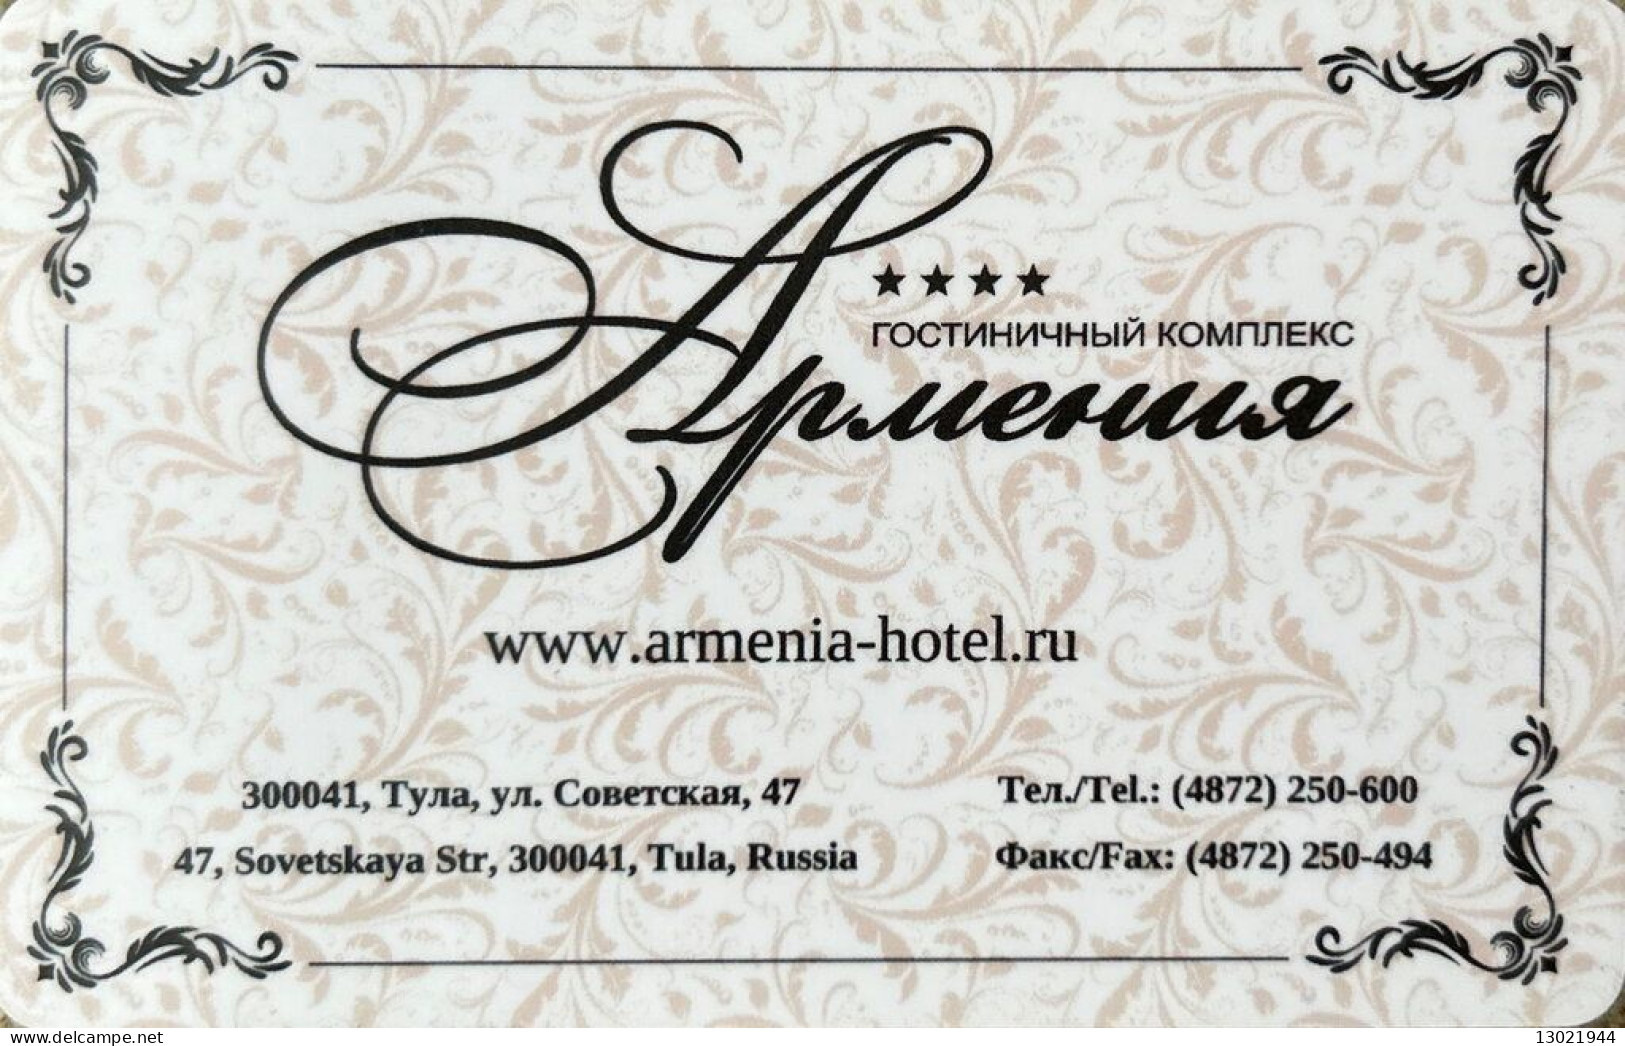 RUSSIA  KEY HOTEL   Armenia Hotel - Tula - Hotel Keycards